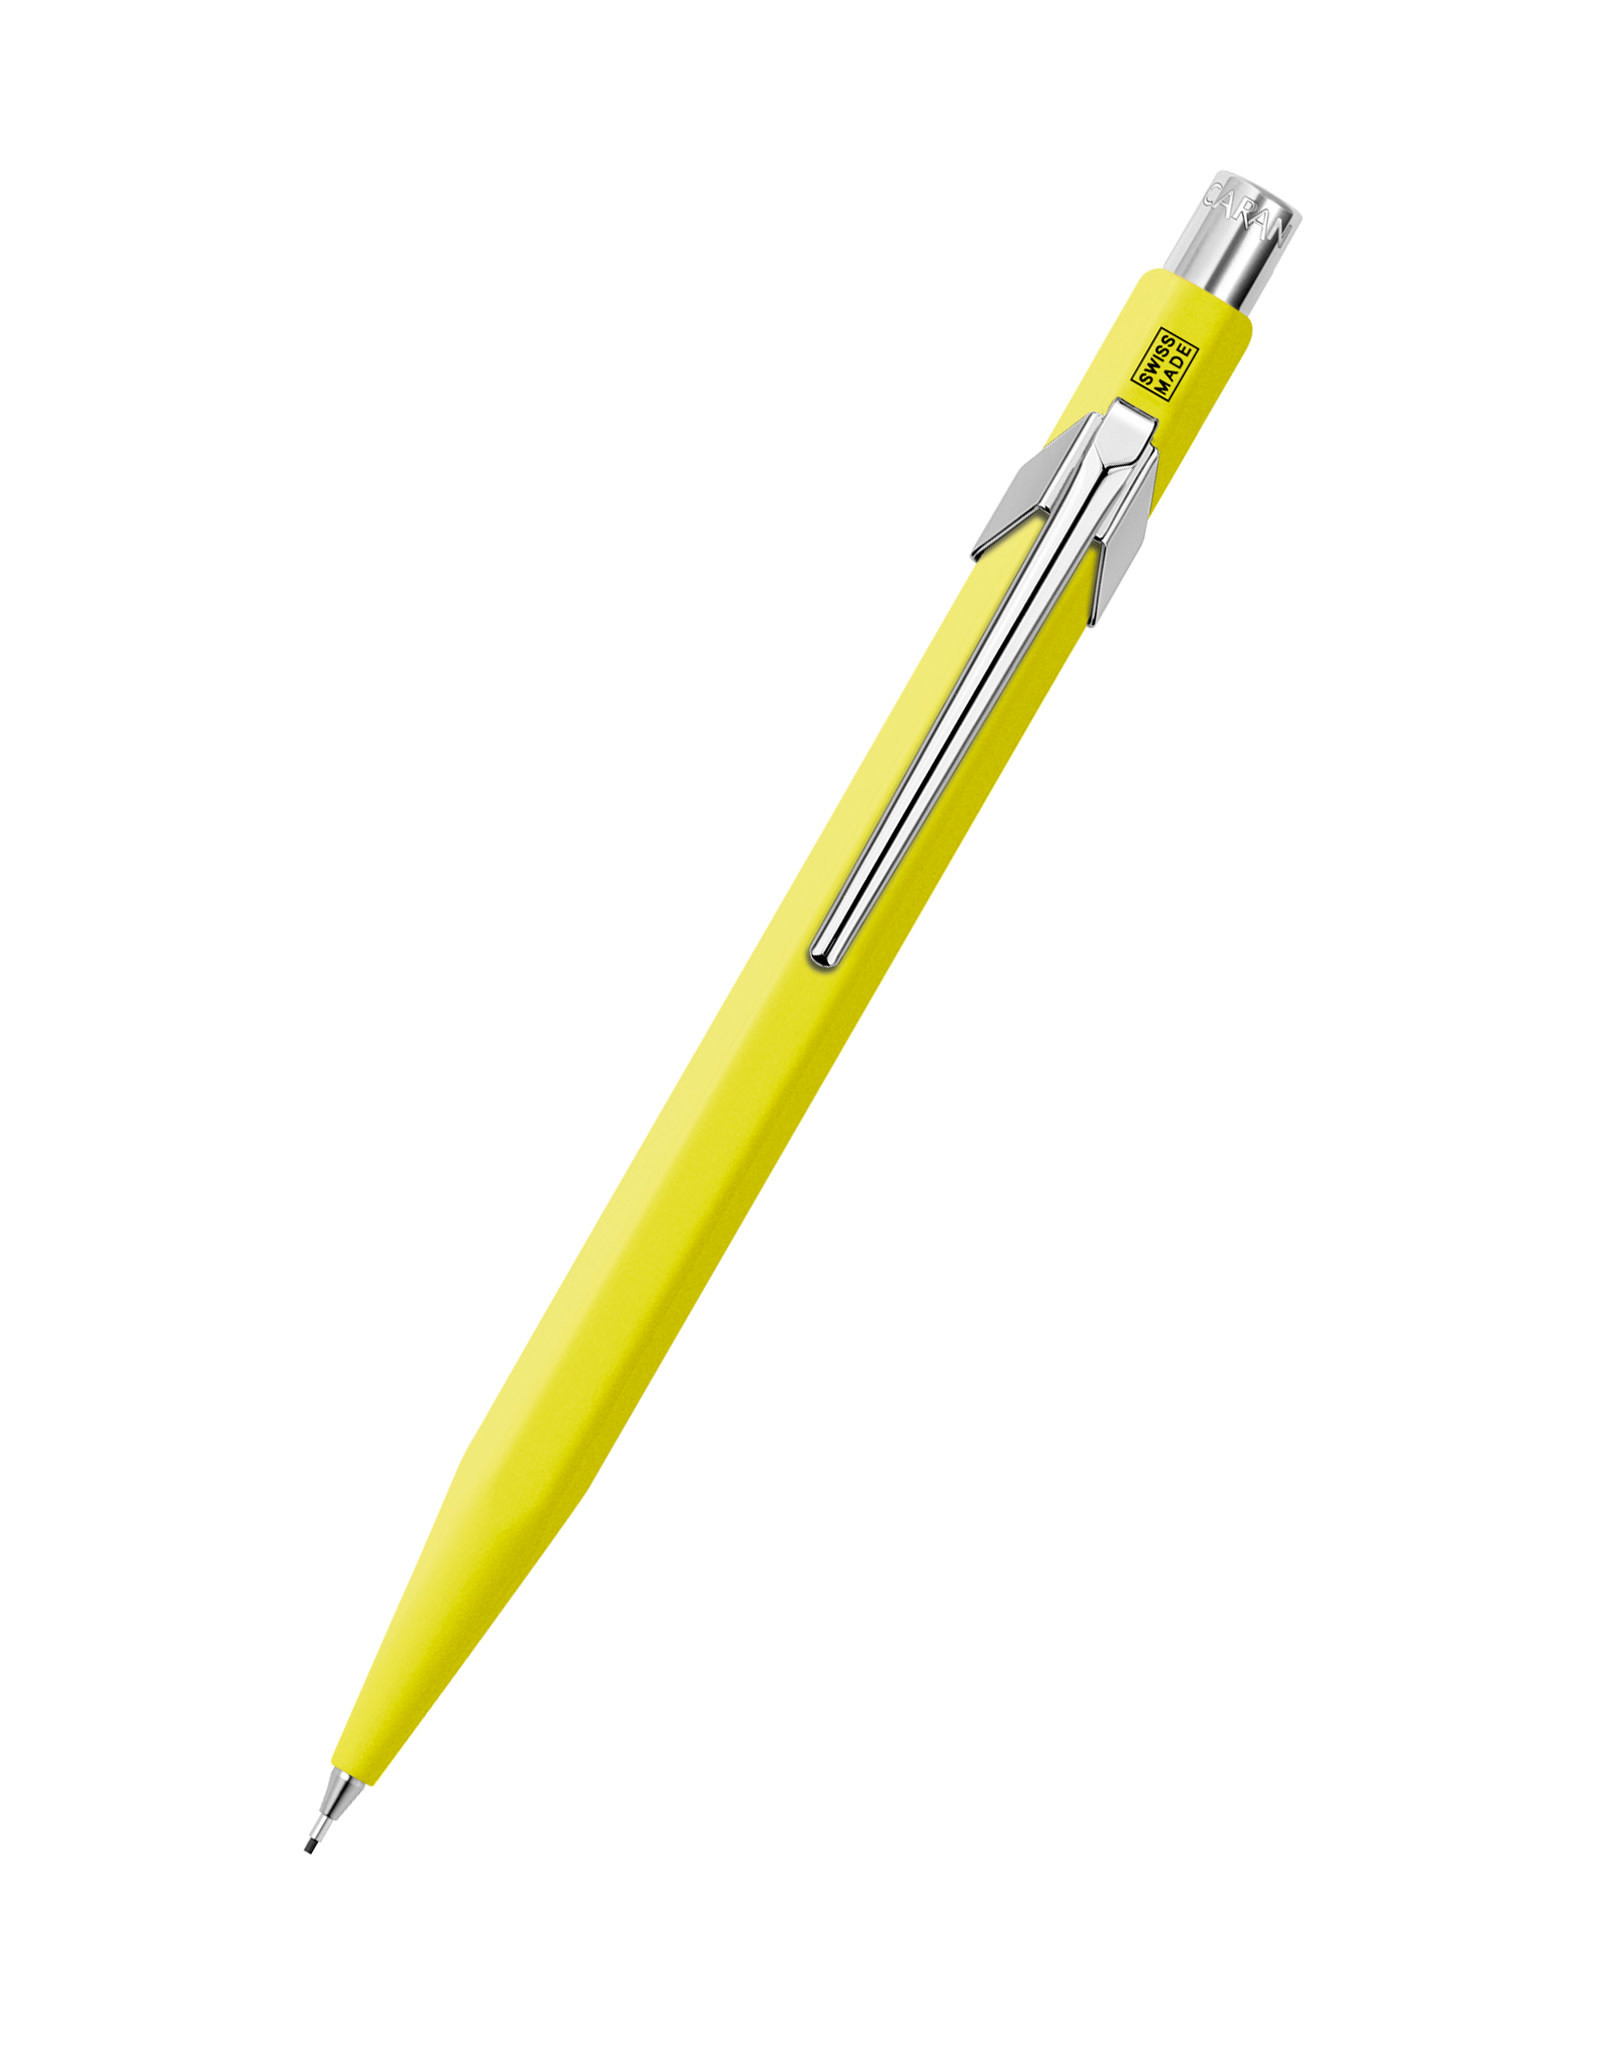 Caran d'Ache Caran D’Ache 844 Mechanical Pencil, Fluorescent Yellow